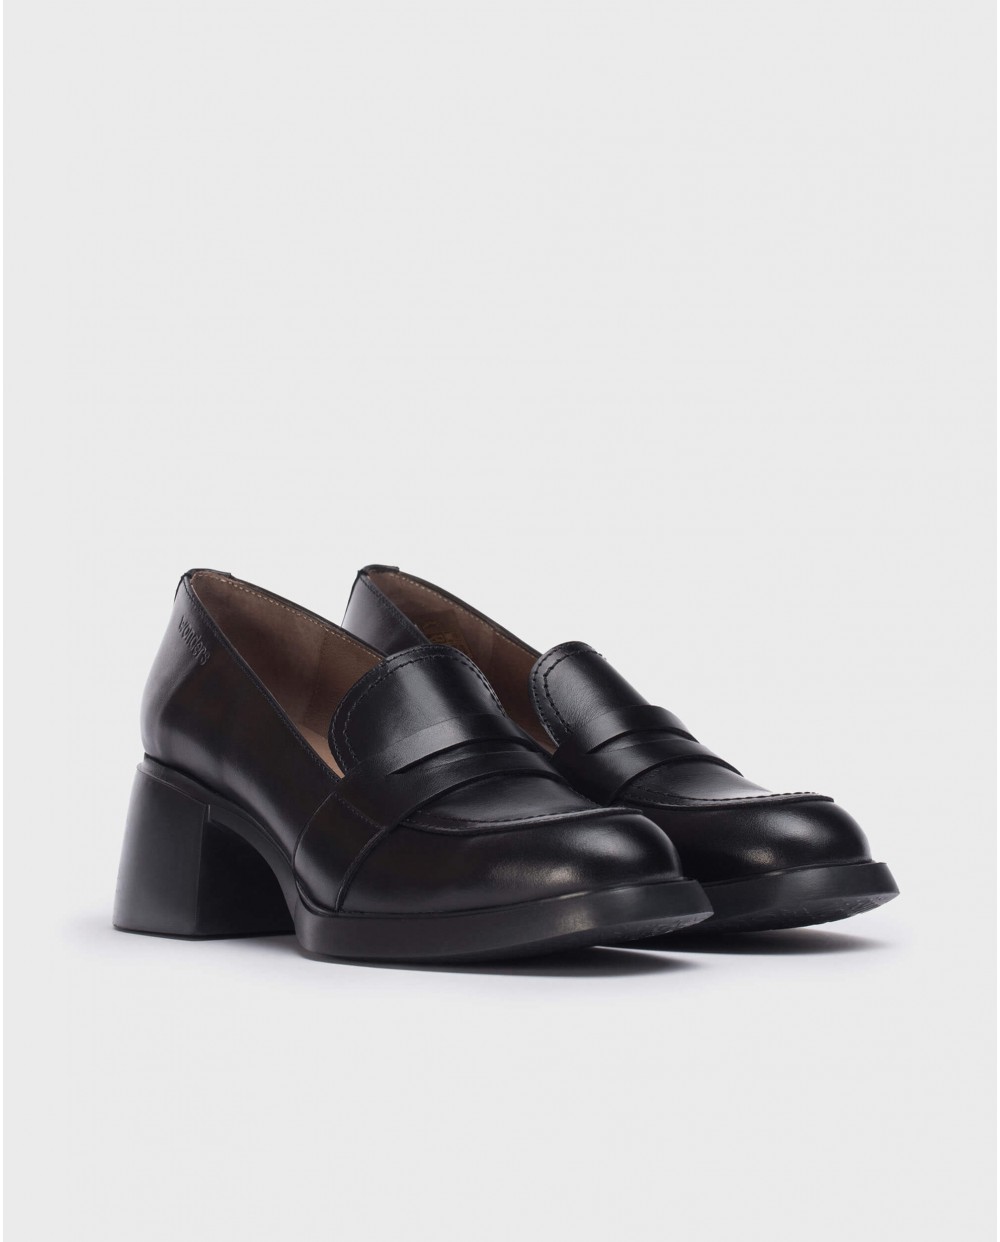 Wonders-Heels-Black shoes Durham